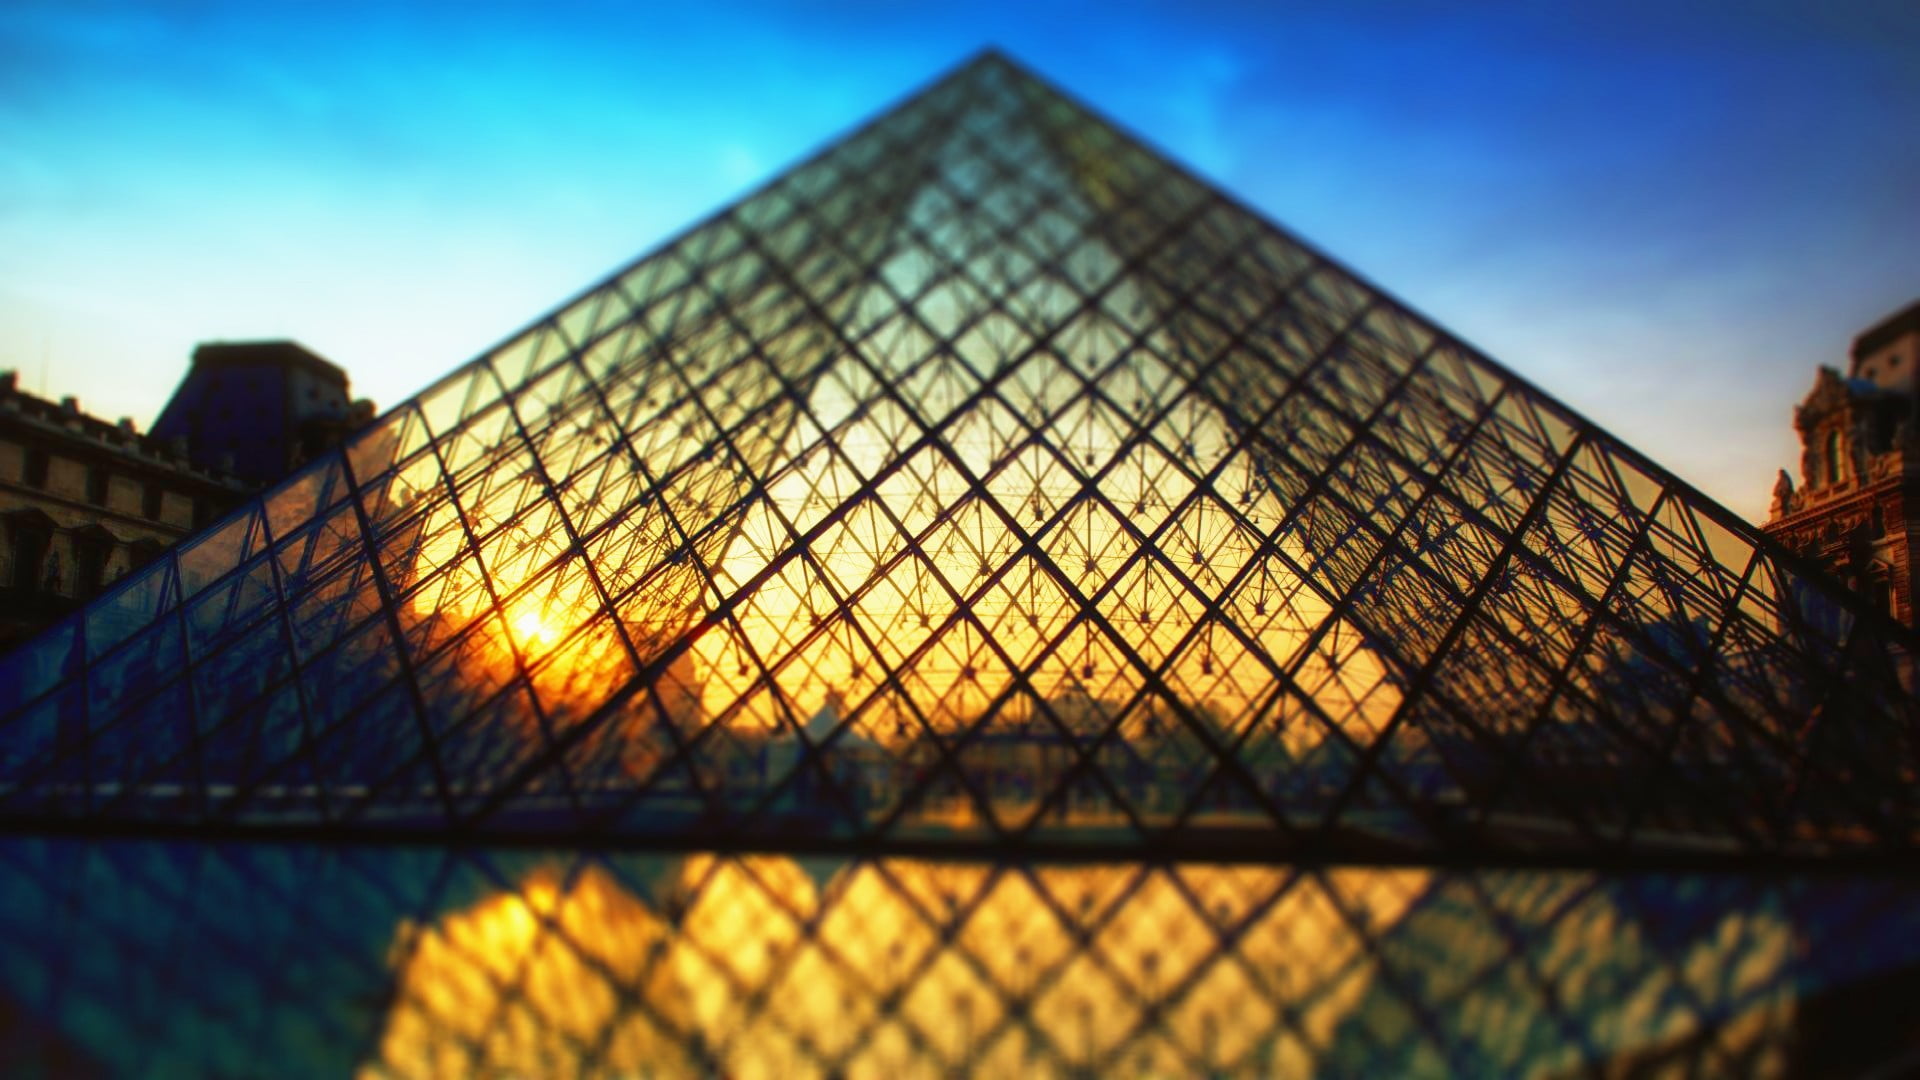 Louvre, Paris France, sunlight, architecture, pyramid, sky, built structure